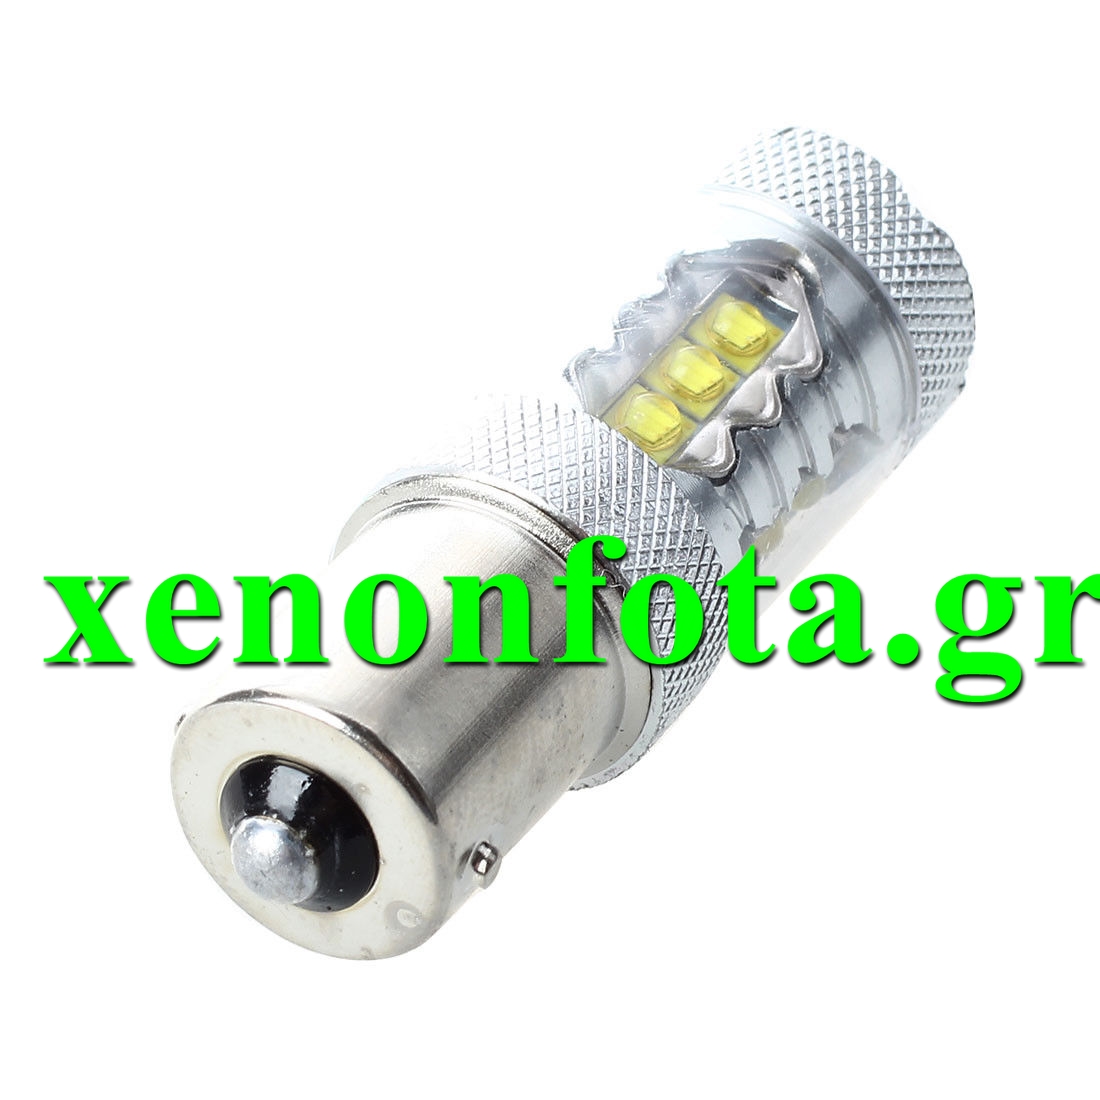 Μονοπολική LED 1156 BA15s με 16 SMD Λευκό φως Κωδικός XF526